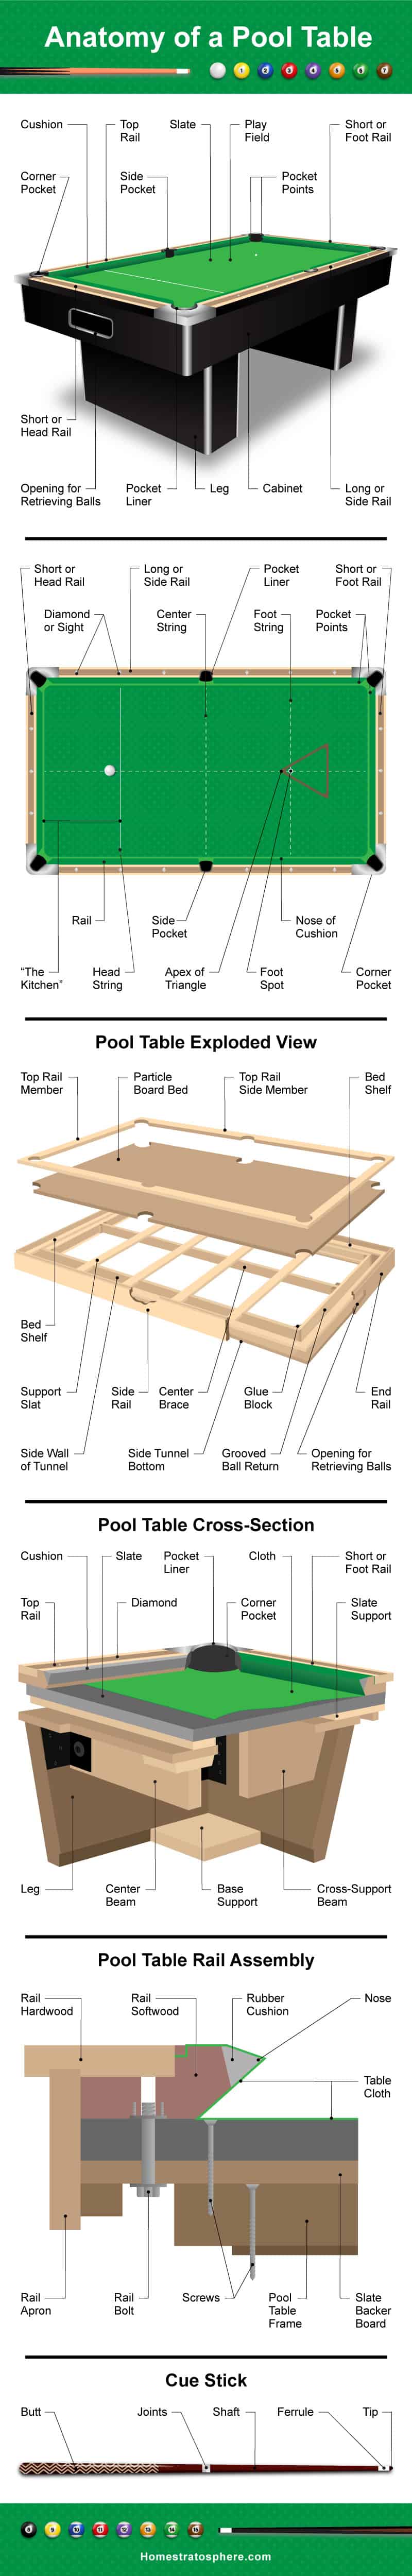 说明台球桌结构的台球桌图，包括台面、台面、横截面和台球杆。